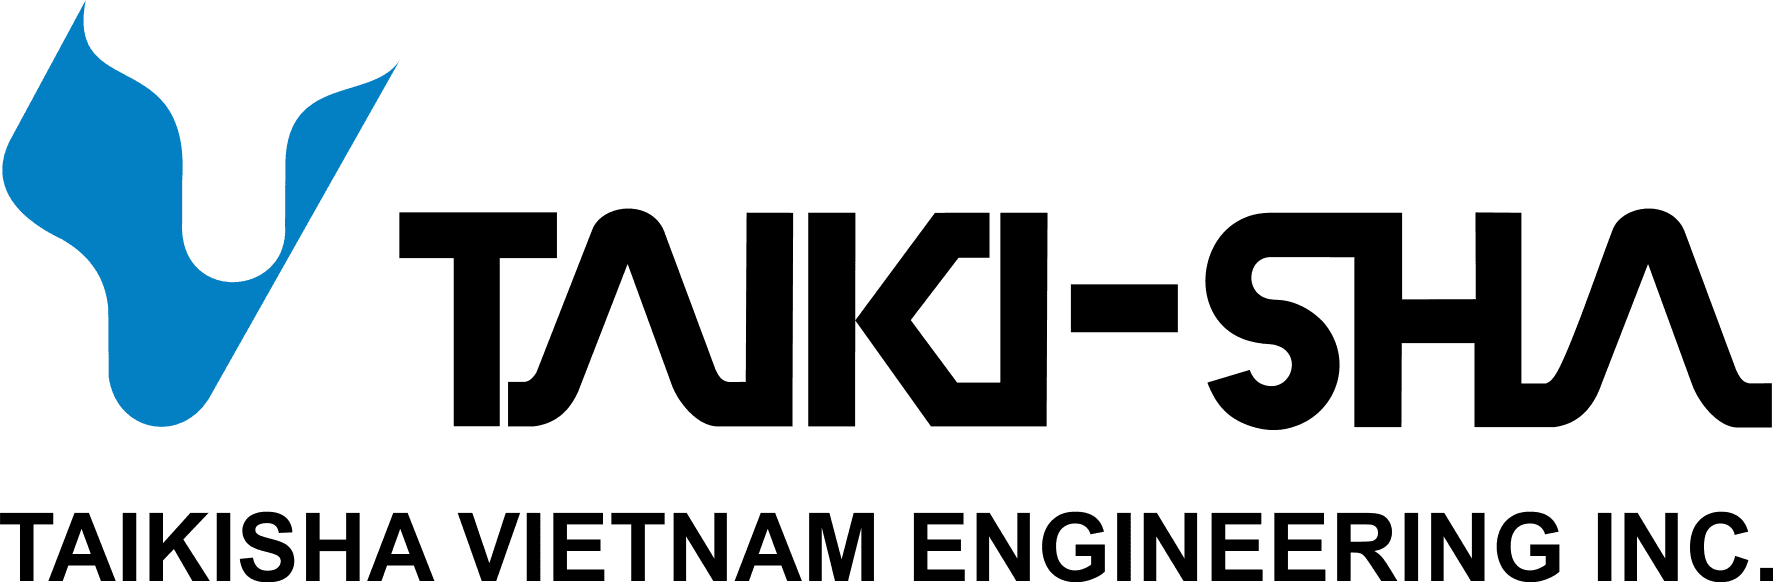 Taikisha Vietnam Engineering tuyển dụng - Tìm việc mới nhất, lương thưởng hấp dẫn.